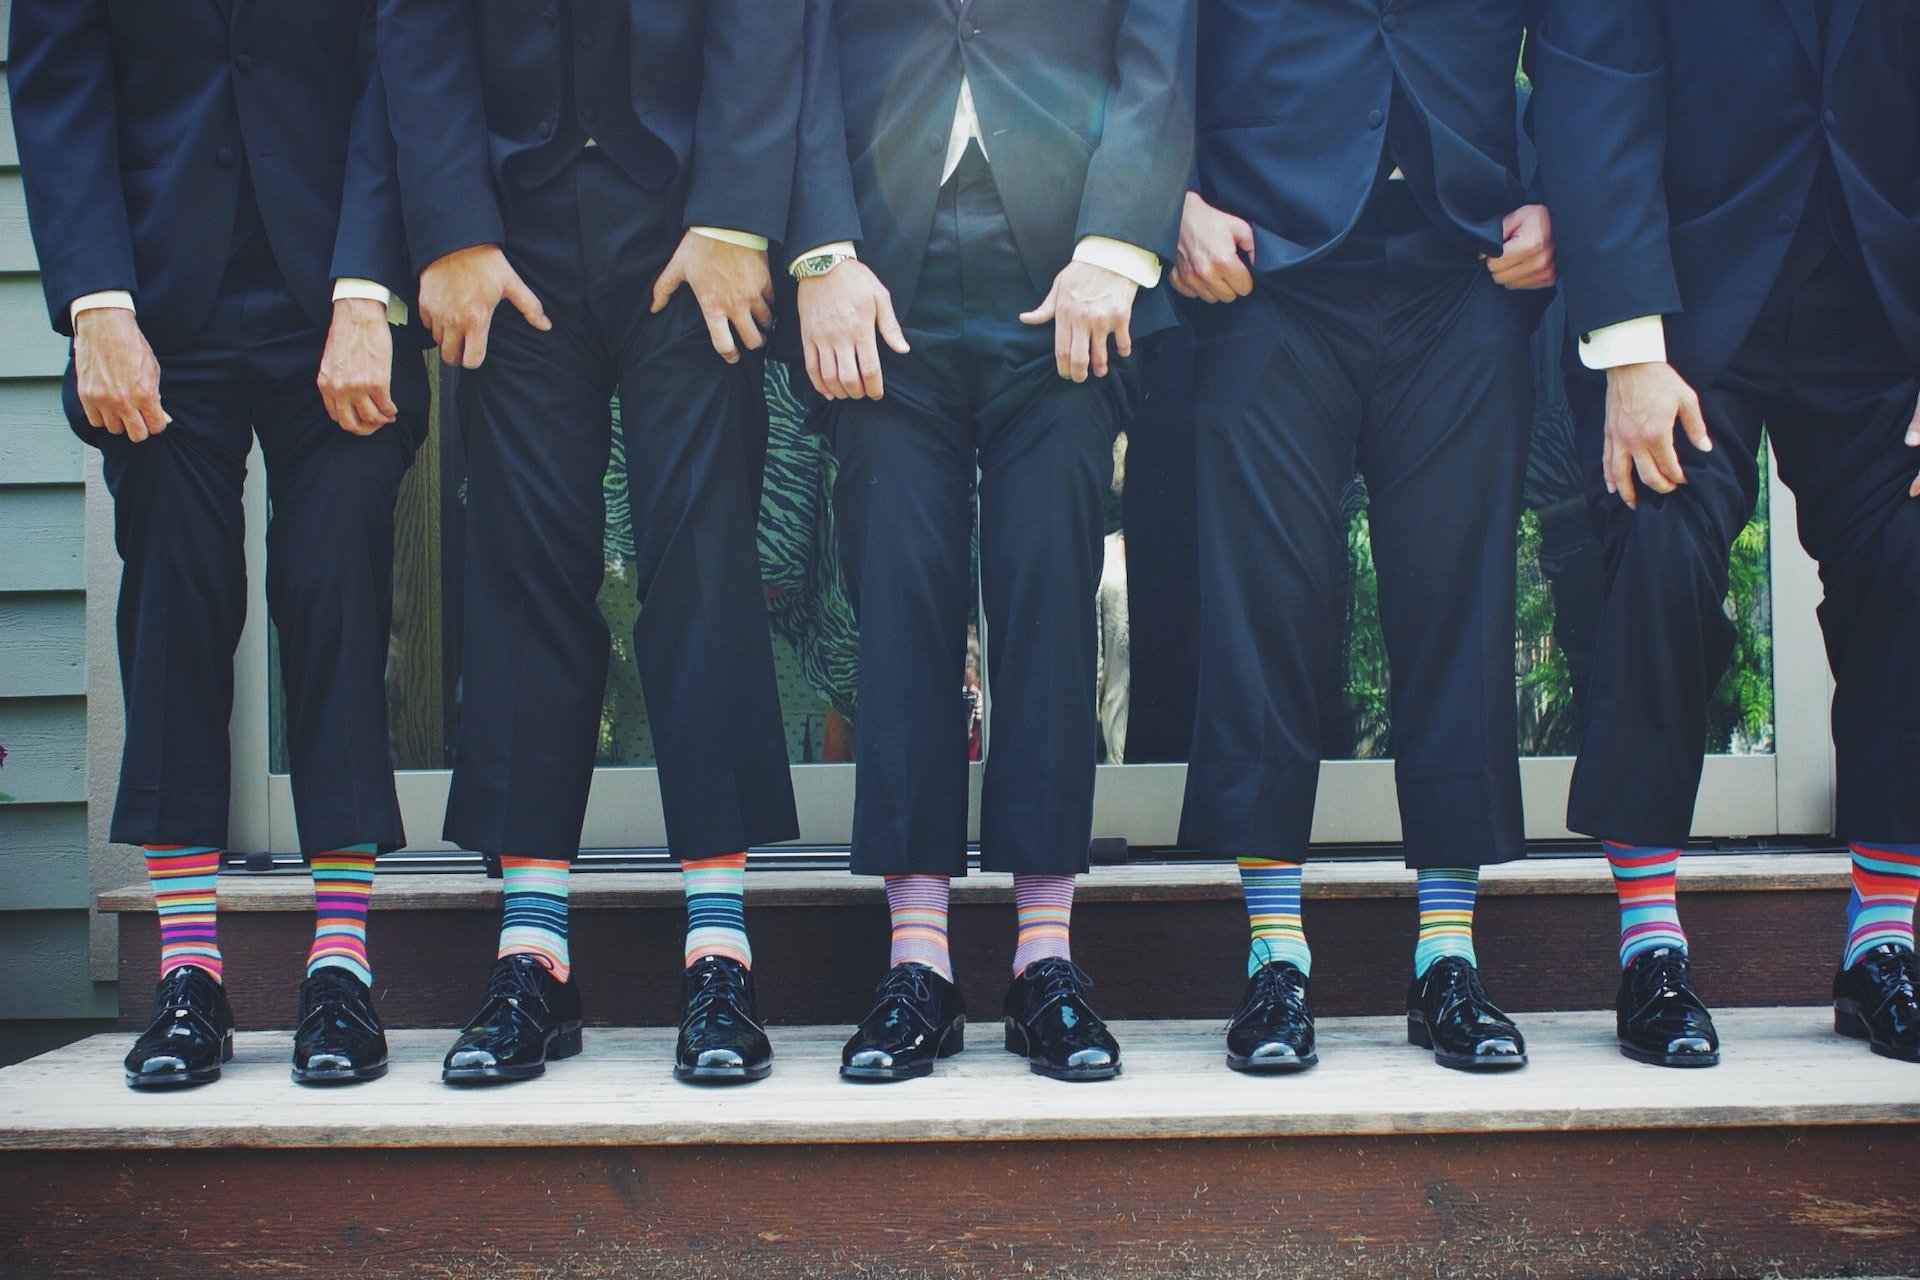 Custom Suits Toronto - Wedding Suits, Men & Women's Suits